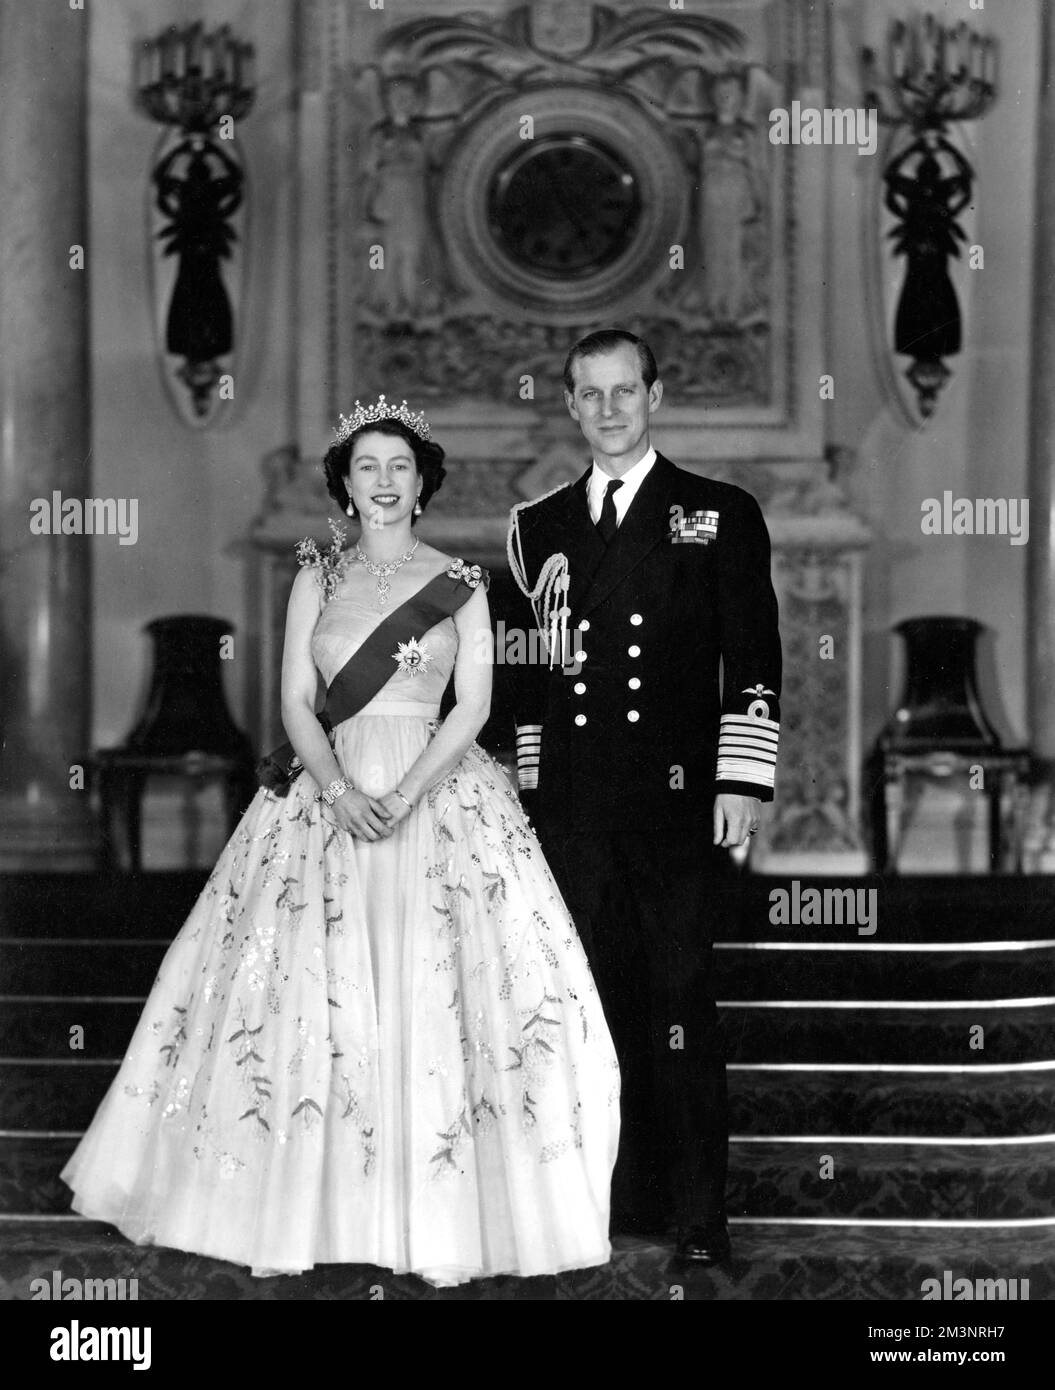 Portrait de commandement Royal par le baron la Reine et le duc d'Édimbourg représenté à l'entrée Grand du Palais de Buckingham, la Reine est vue dans une robe de soirée en tulle jaune ornée de jets de mimosa et de broderie de paaillette dorée : elle porte le ruban bleu et l'étoile de la jarretière. Ce sont quelques détails de ses diamants Majestys présentés dans le portrait. Le collier est un cadeau de mariage du Nizam de Hyderabad; le tiara, également un cadeau de mariage, de la reine Marie. La broche d'arc, les pendants d'oreilles, le bracelet et la montre-bracelet en platine sont également en diamants. Le duc d'Édimbourg est Banque D'Images